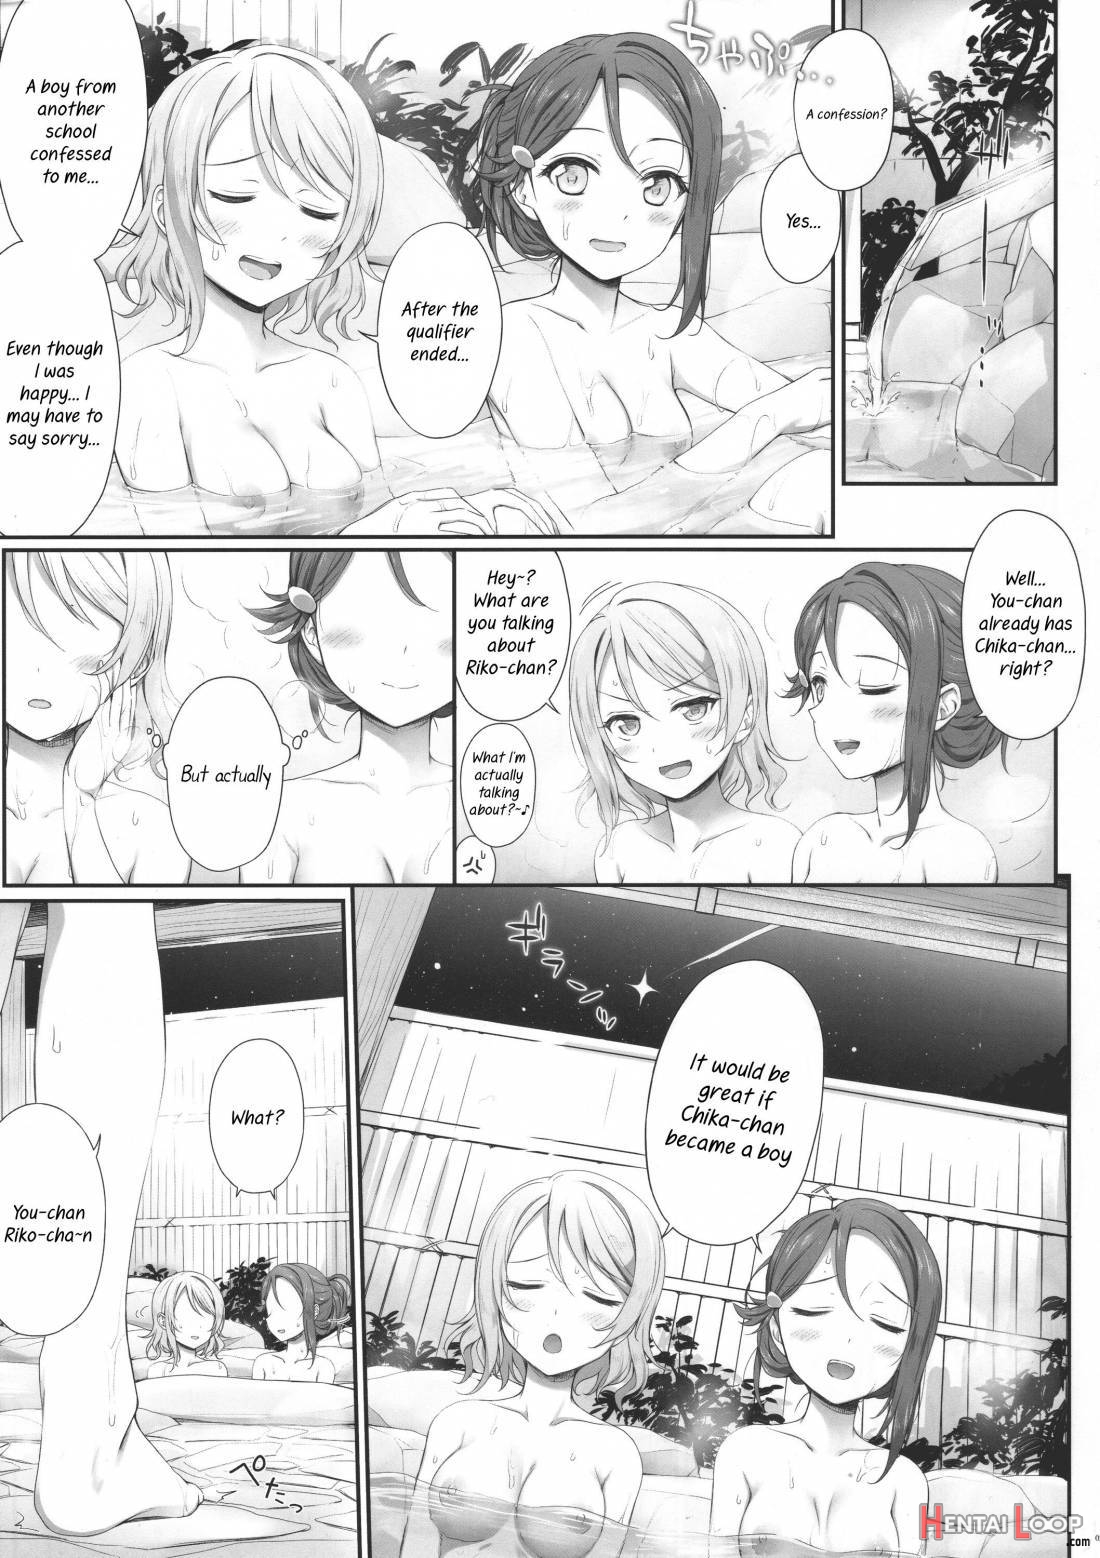 Oatsui No Ga Daisuki! page 2